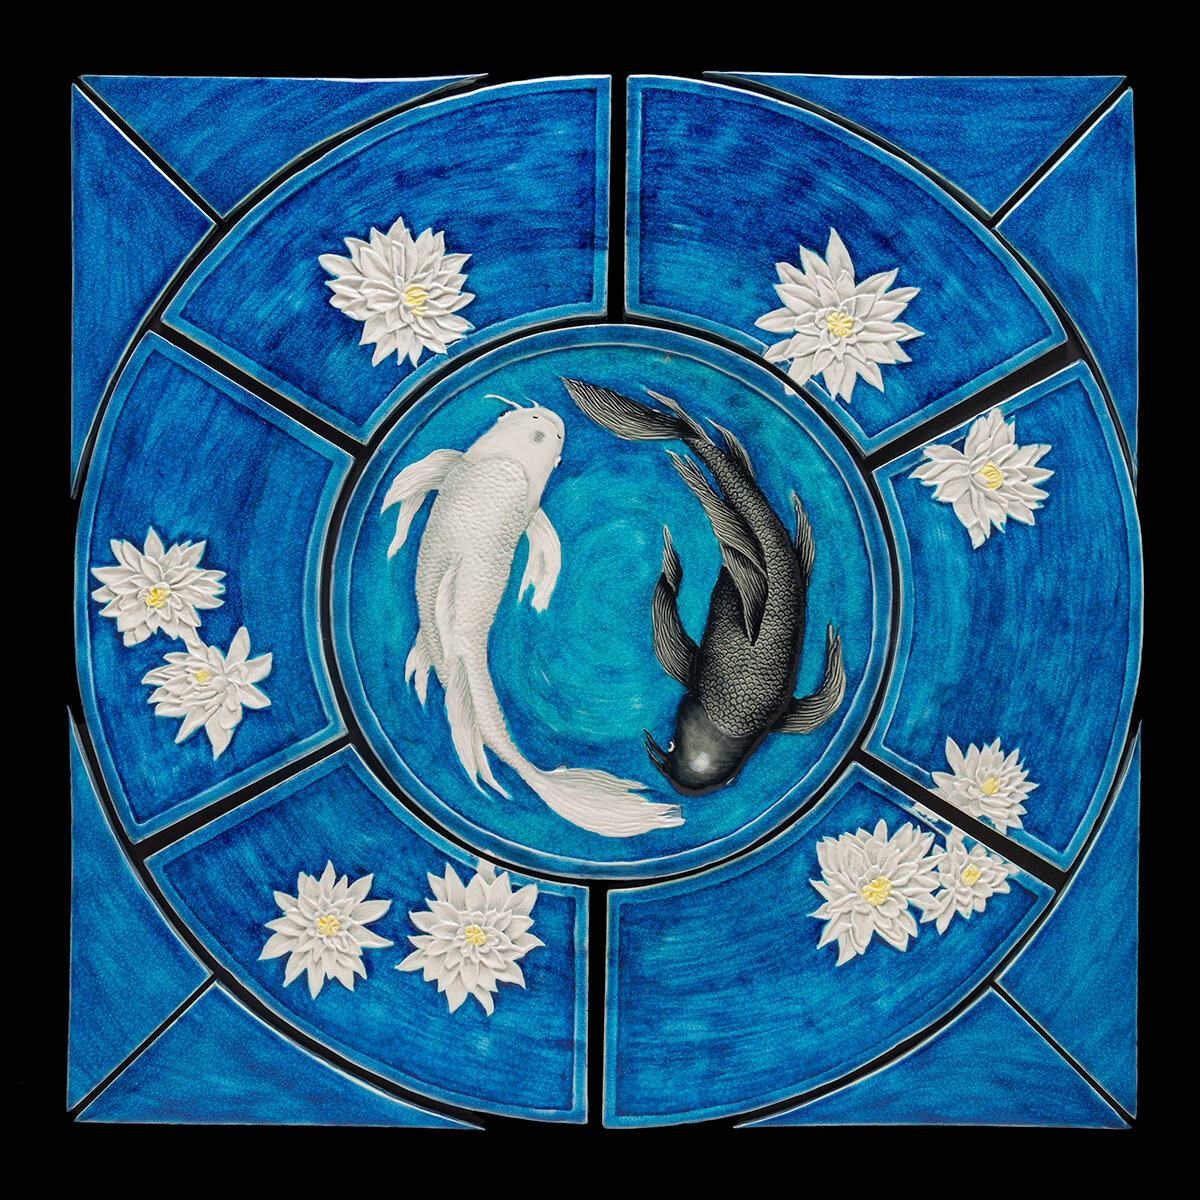 Yin and Yang medallion mural